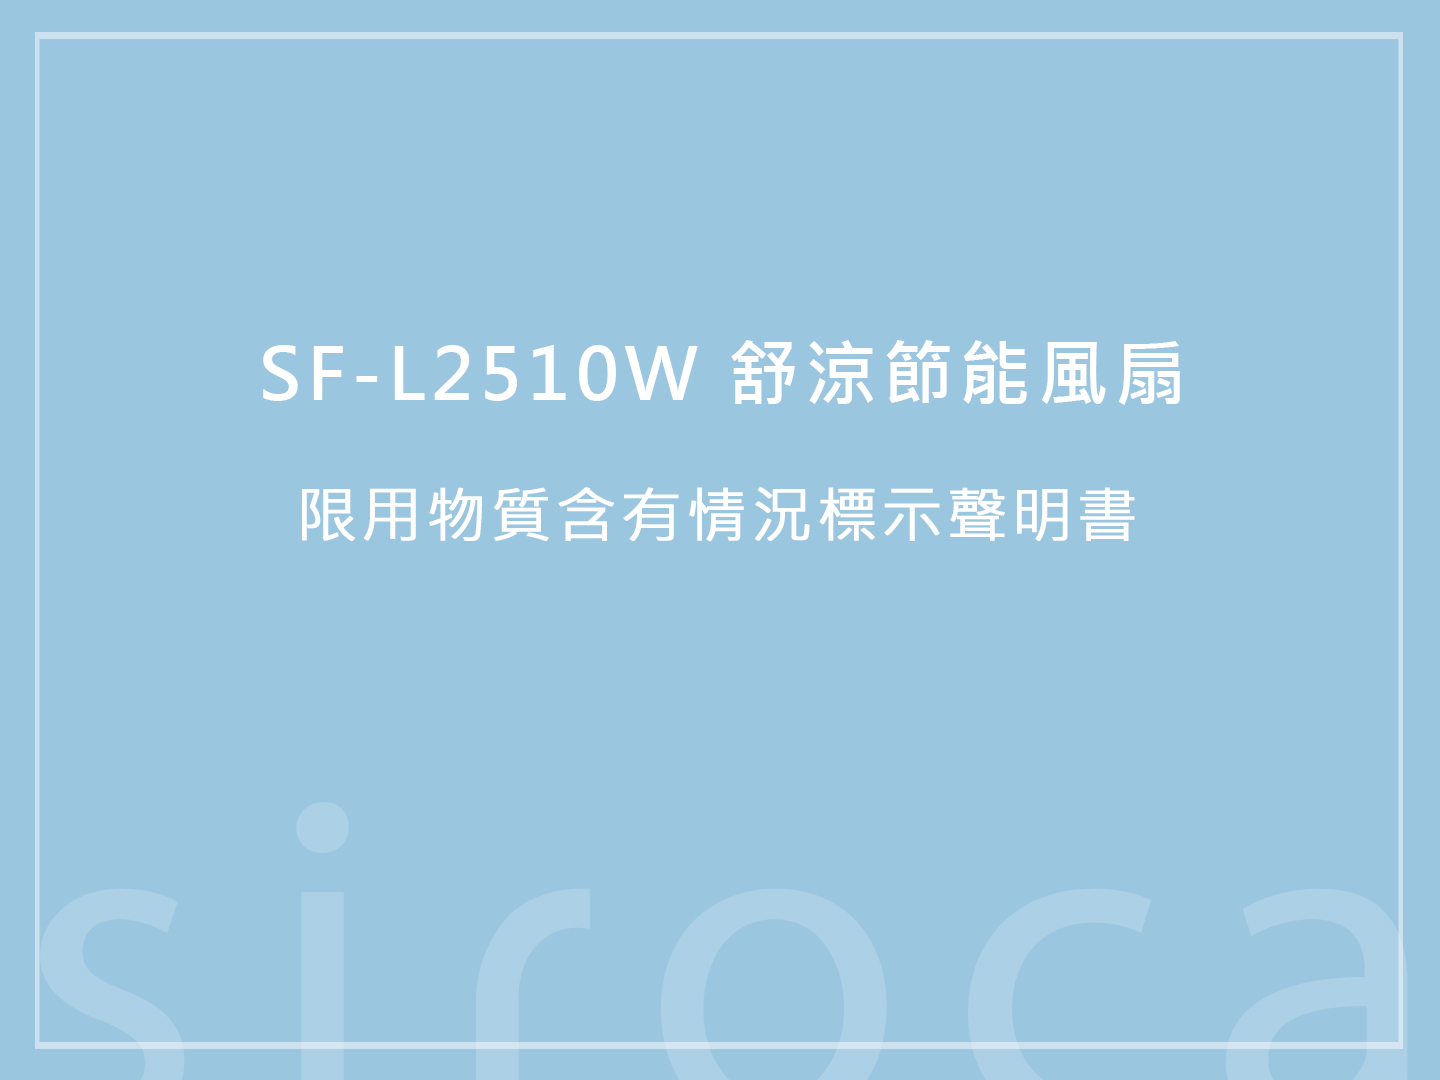 SF-L2510W 舒涼節能風扇 限用物質含有情況標示聲明書